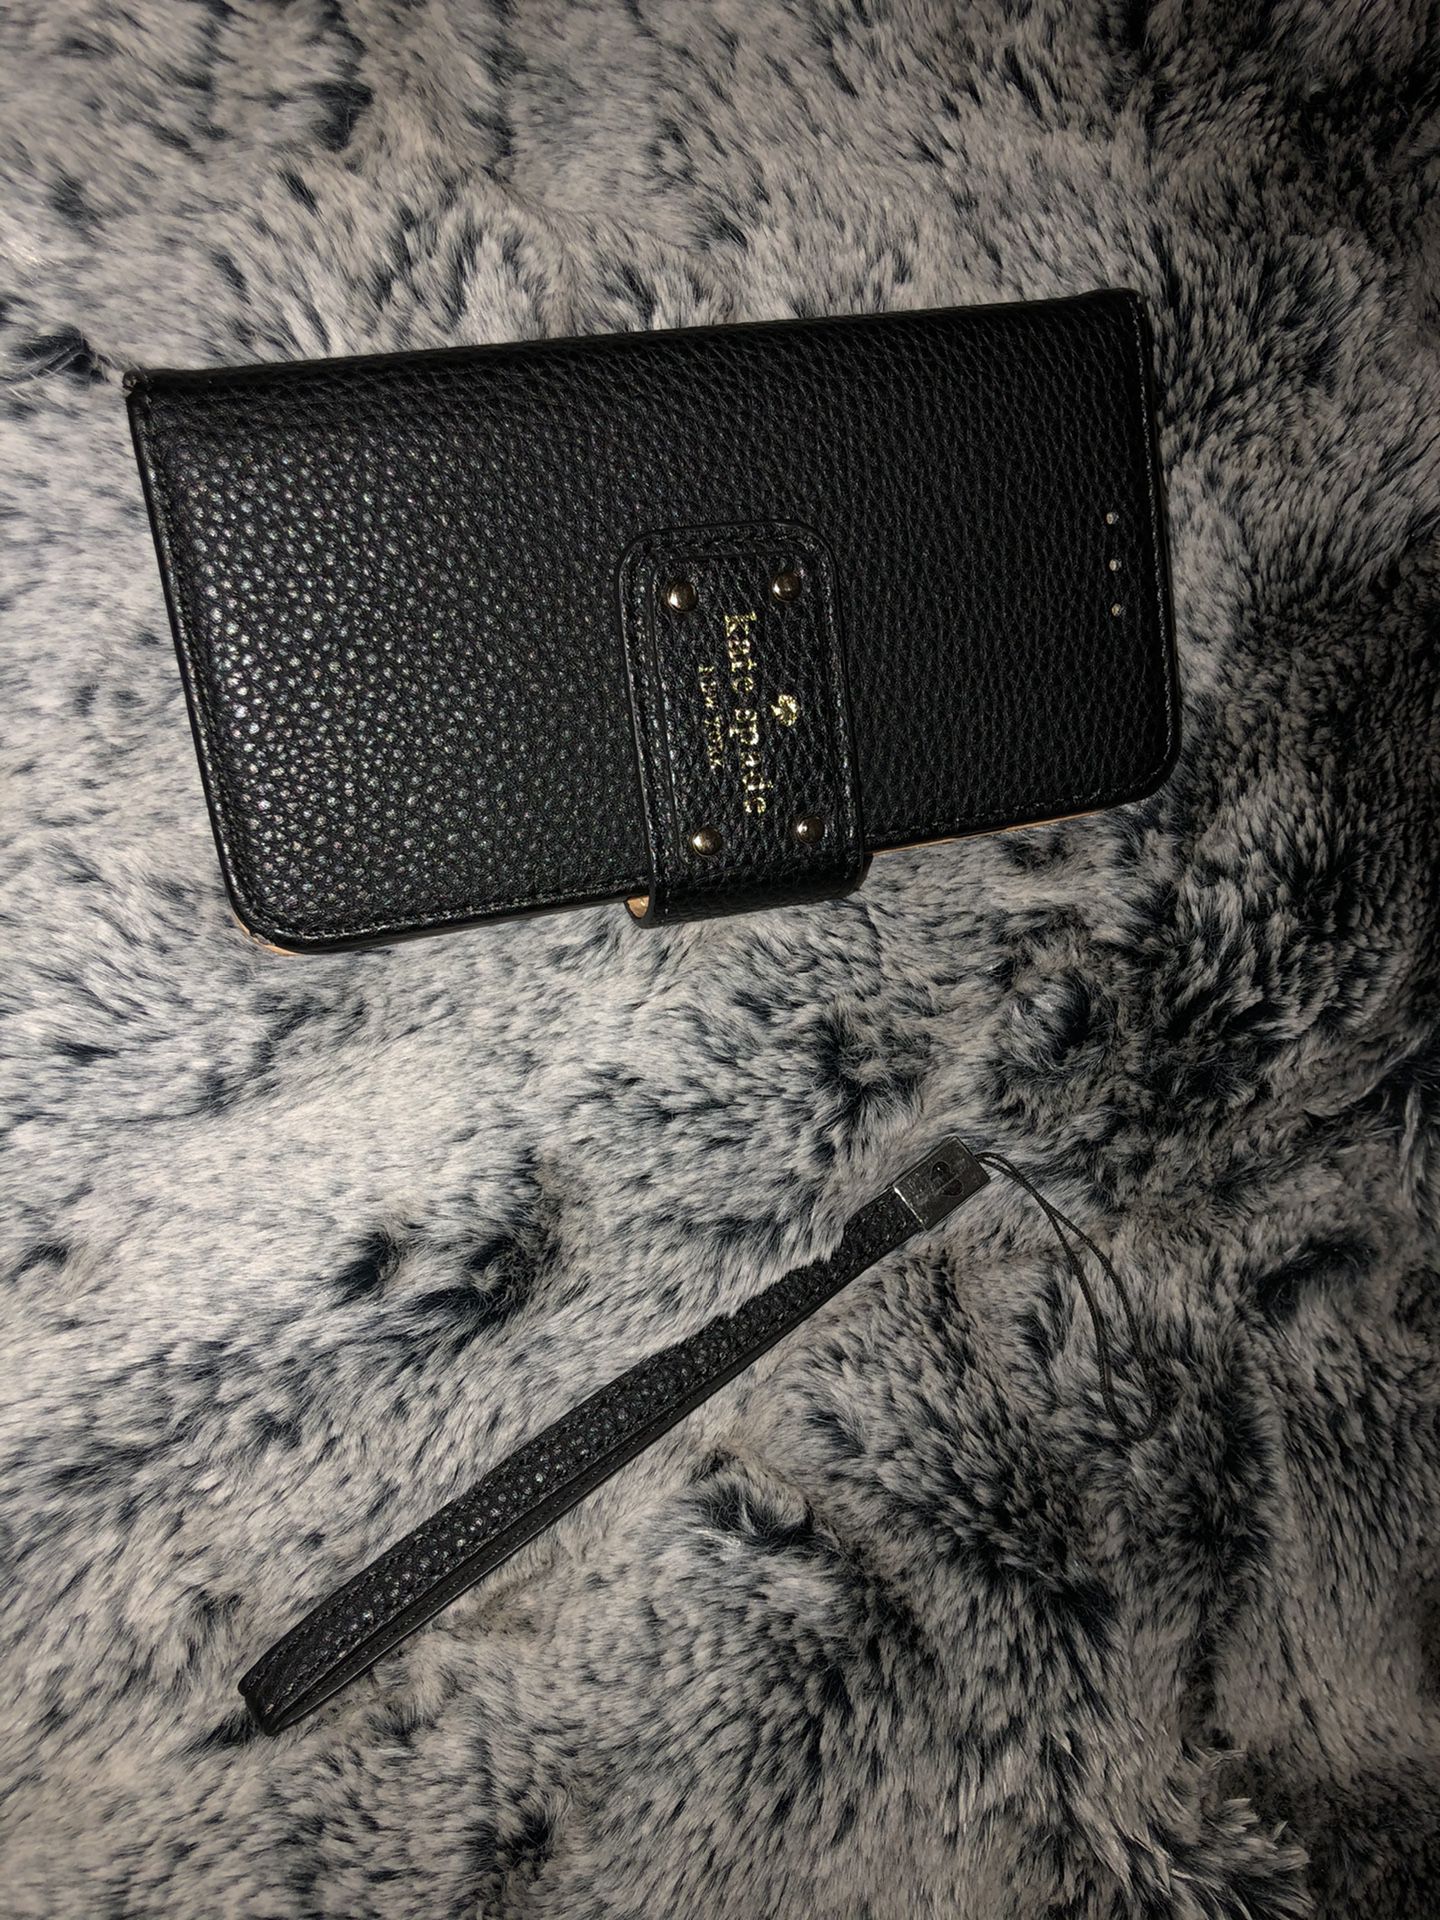 Kate spade ♠️ iPhone 7 or 8 Plus phone wallet